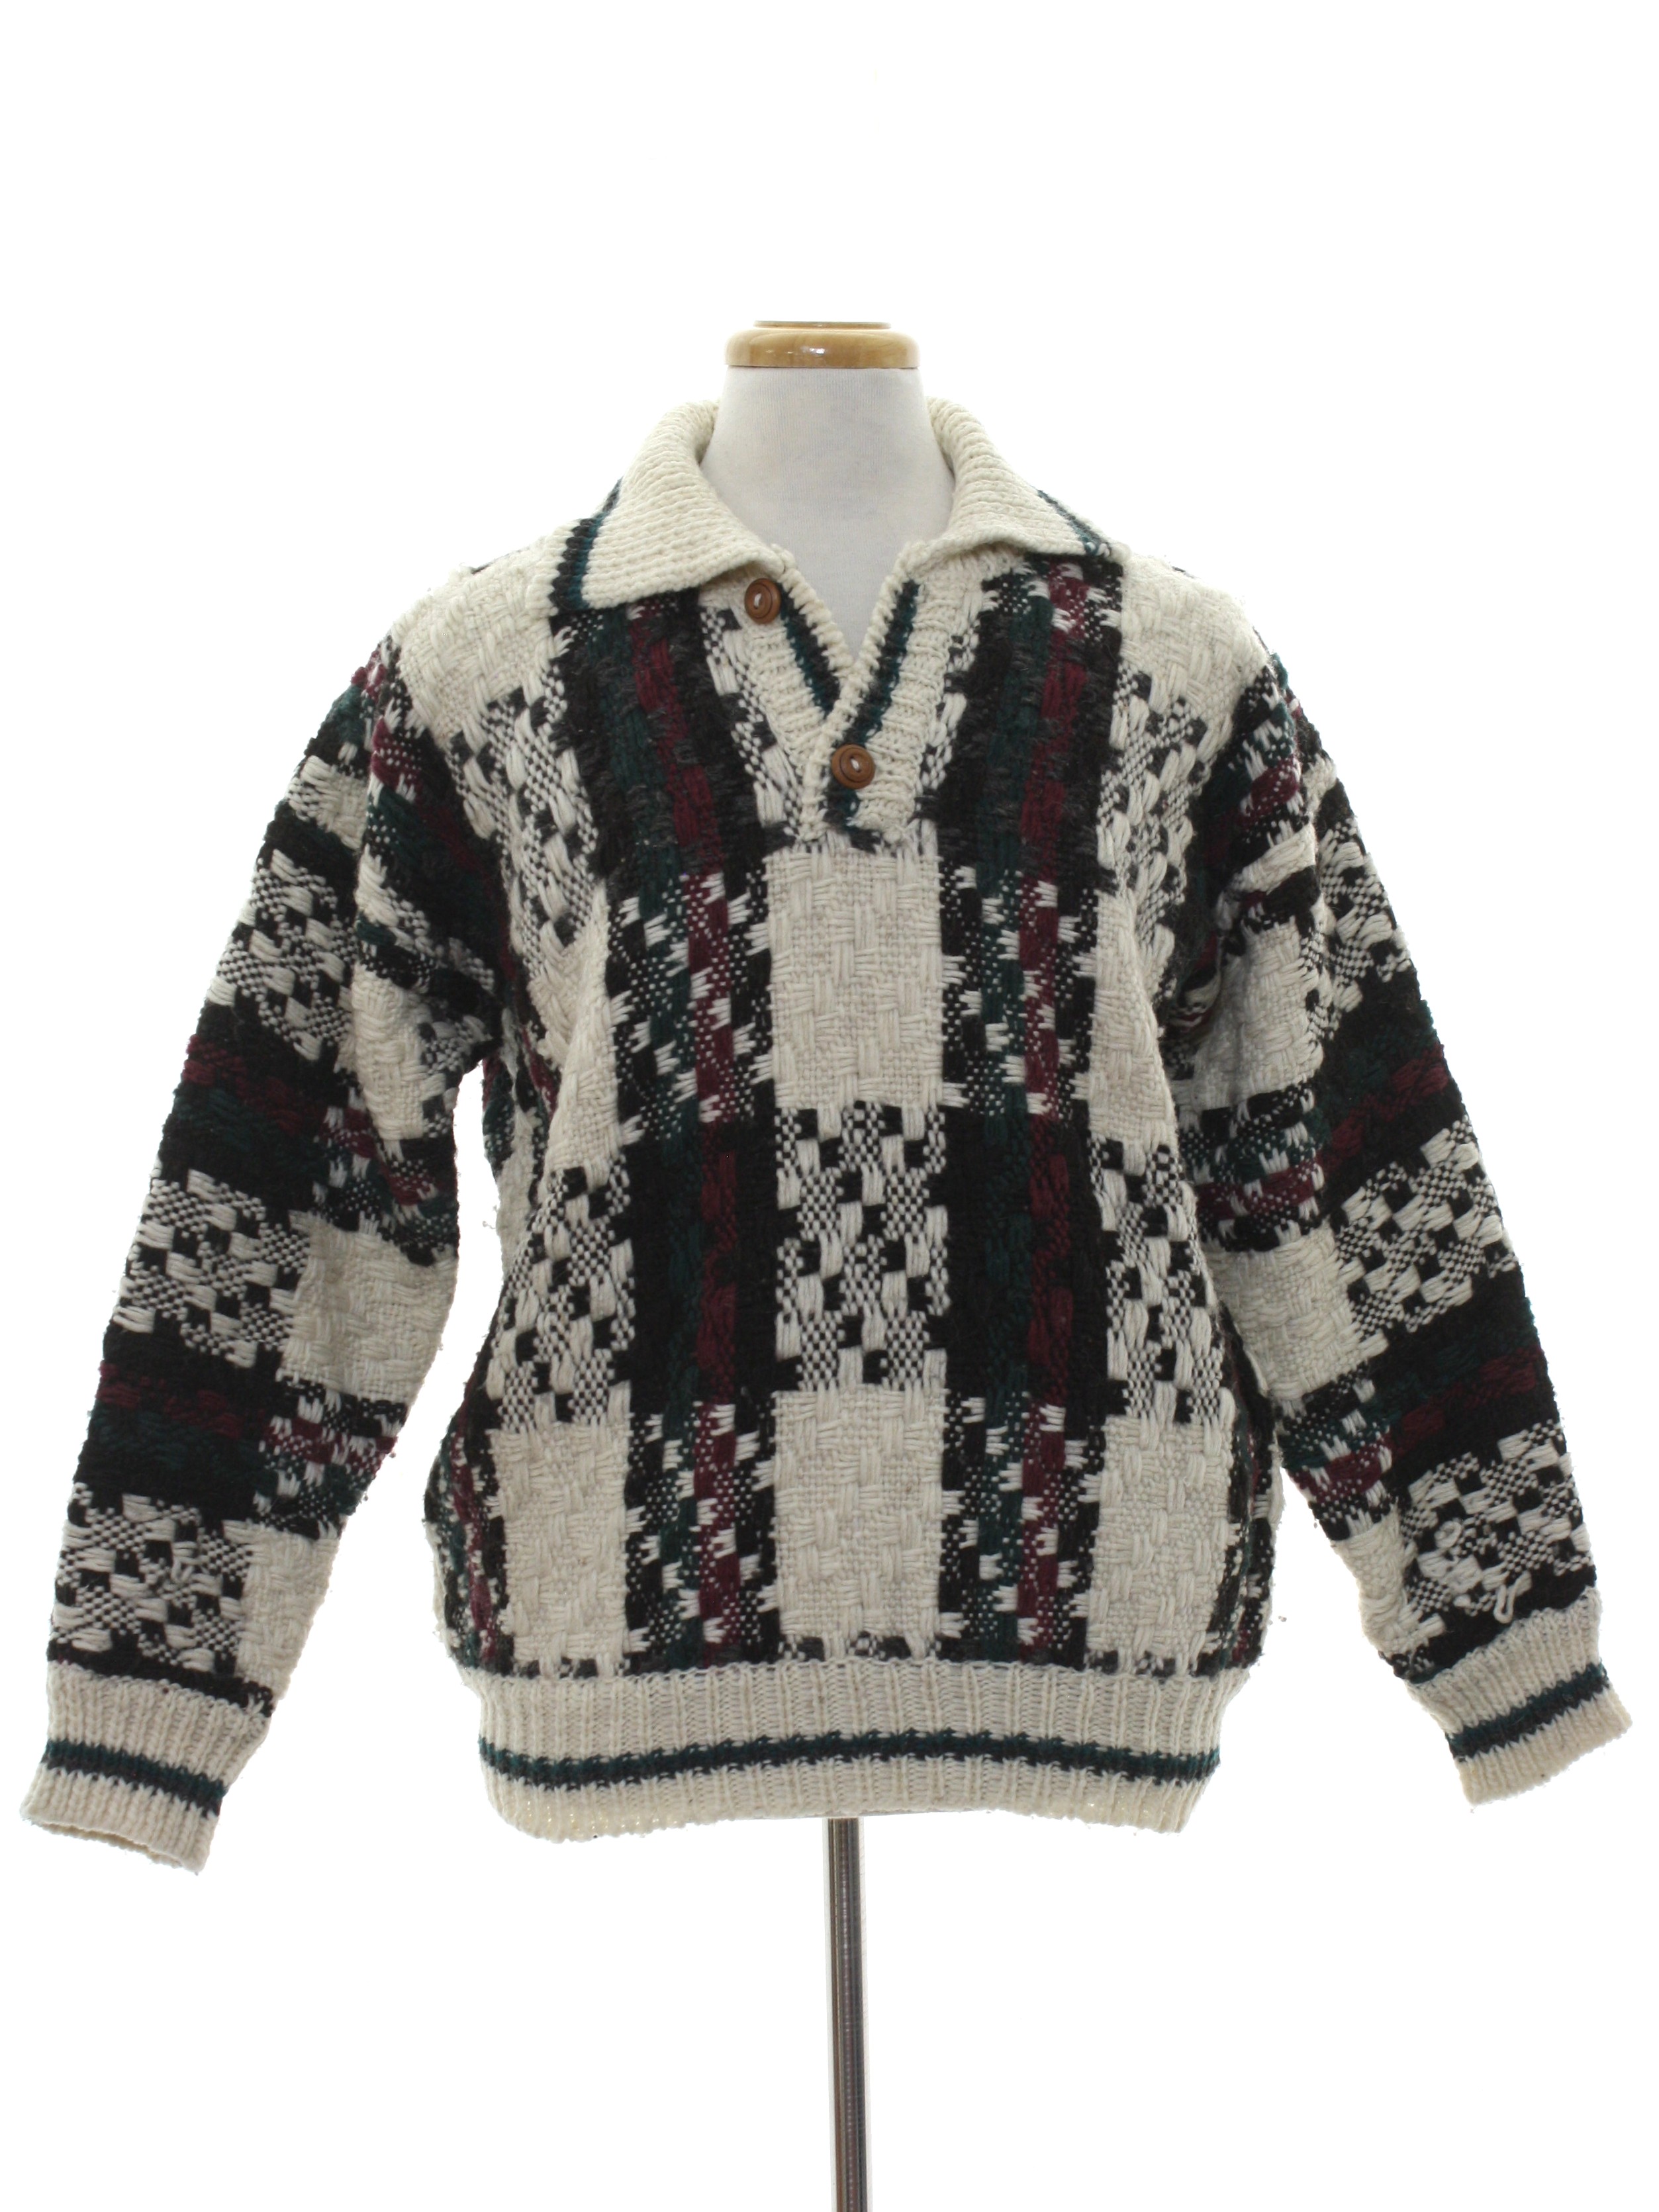 Nineties Vintage Sweater: 90s -Hand Knit in Ecuador- Mens winter